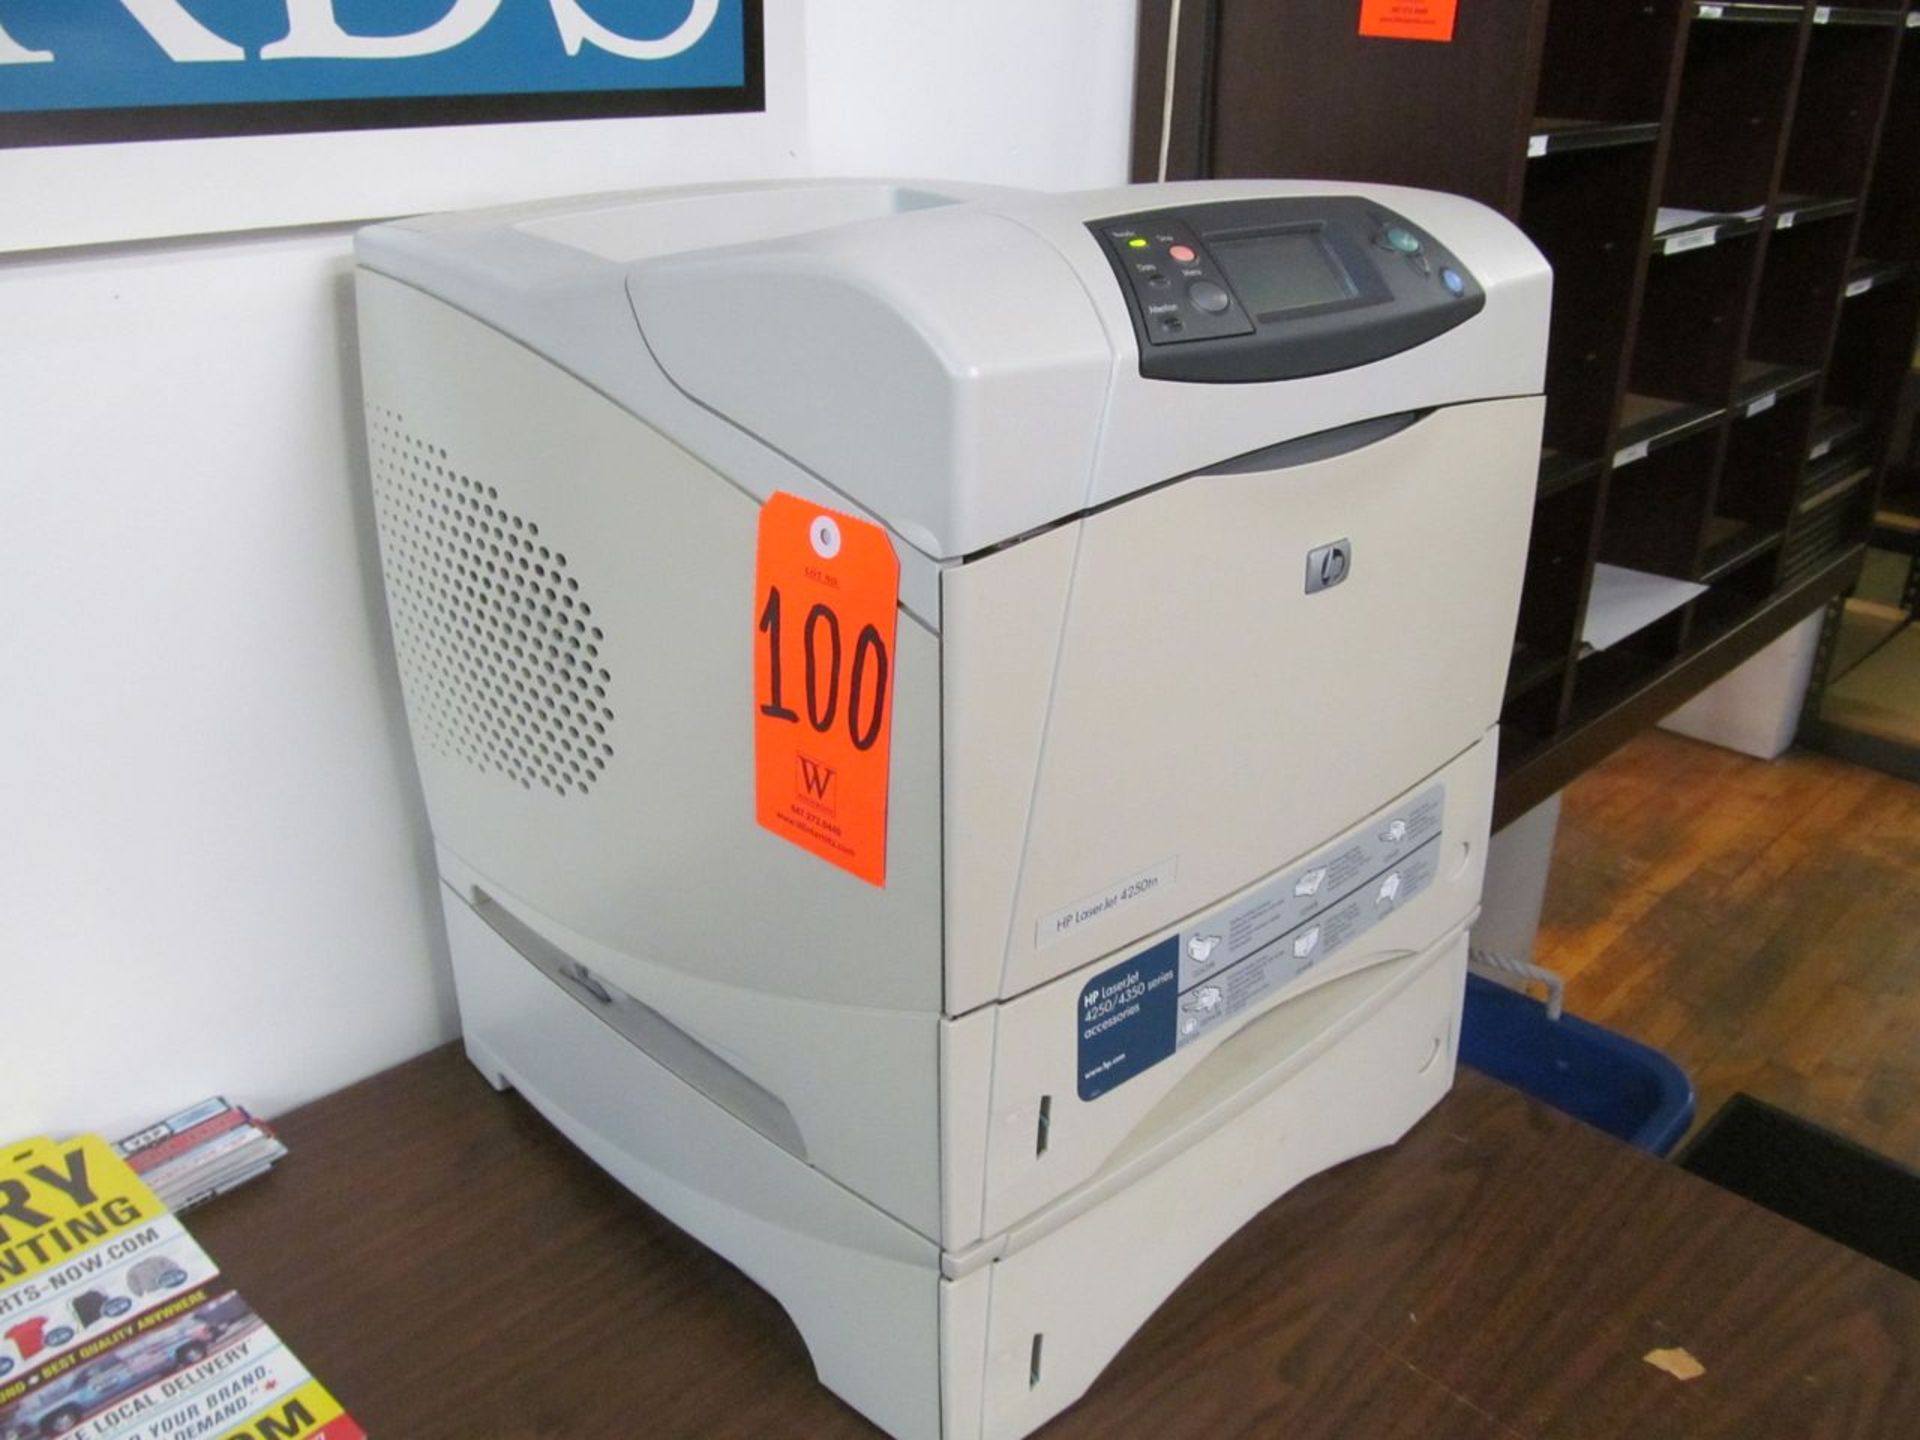 Hewlett-Packard Laser Jet 4250tn Printer